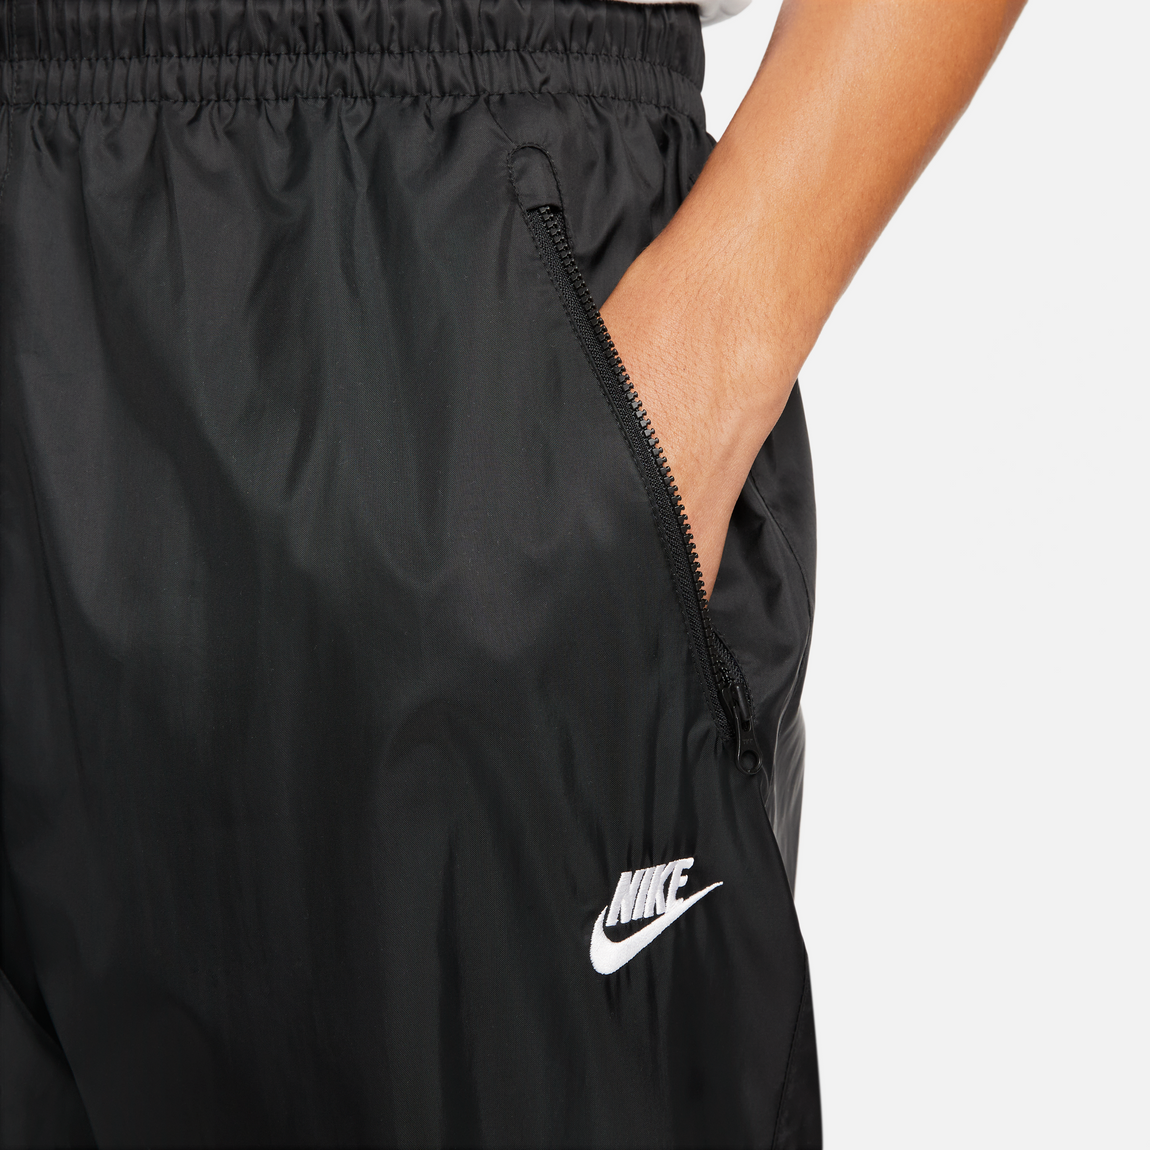 Nike Windrunner Pants (Black/White) - Nike Windrunner Pants (Black/White) - 